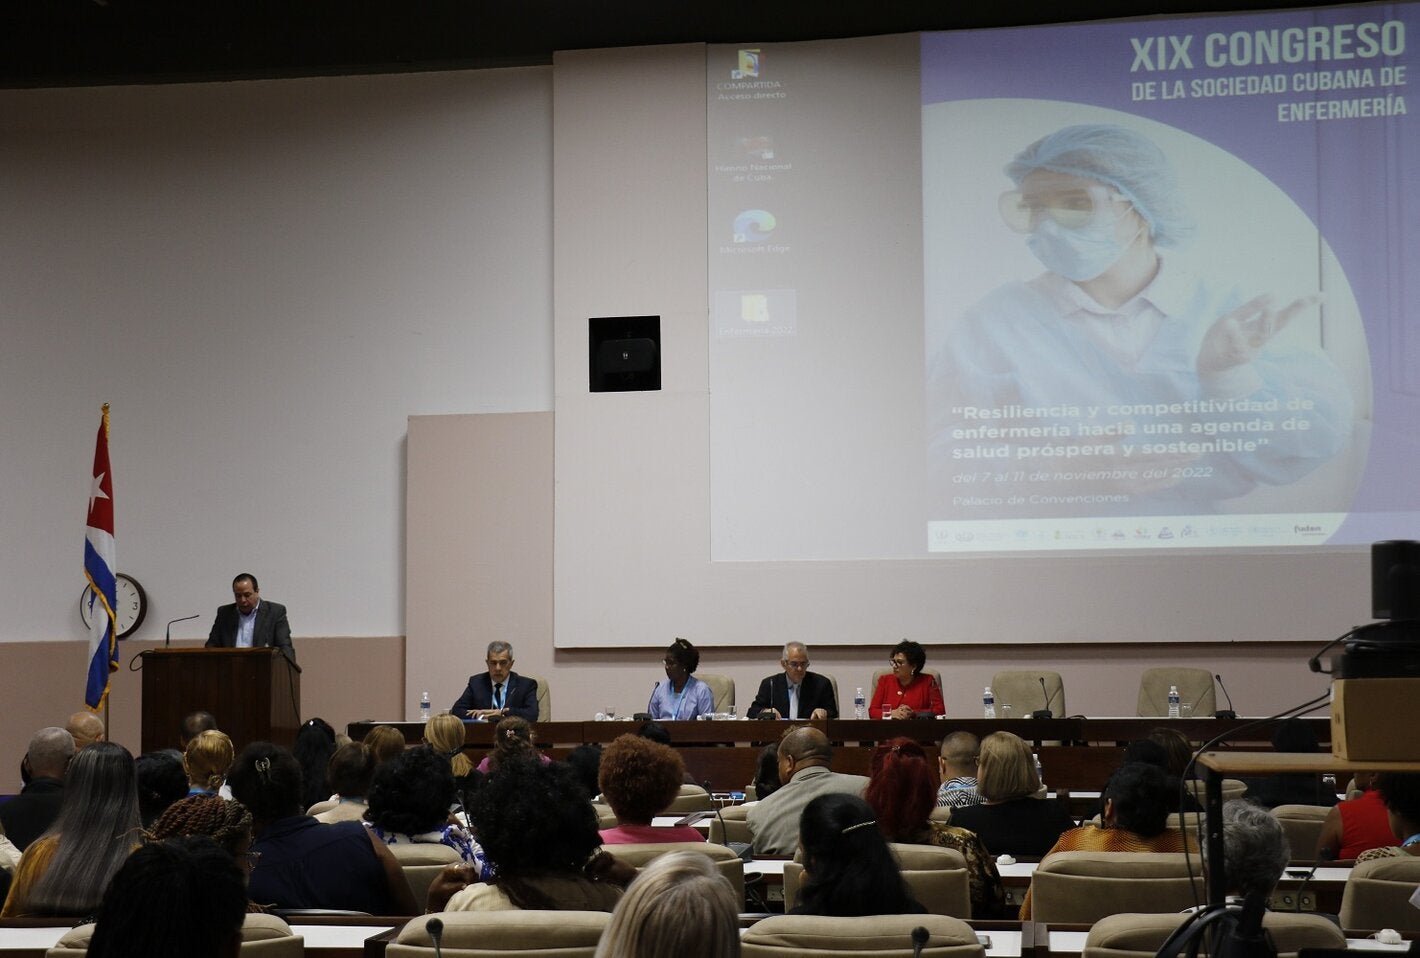 Presidencia XIX Congreso de la Sociedad Cubana de Enfermería